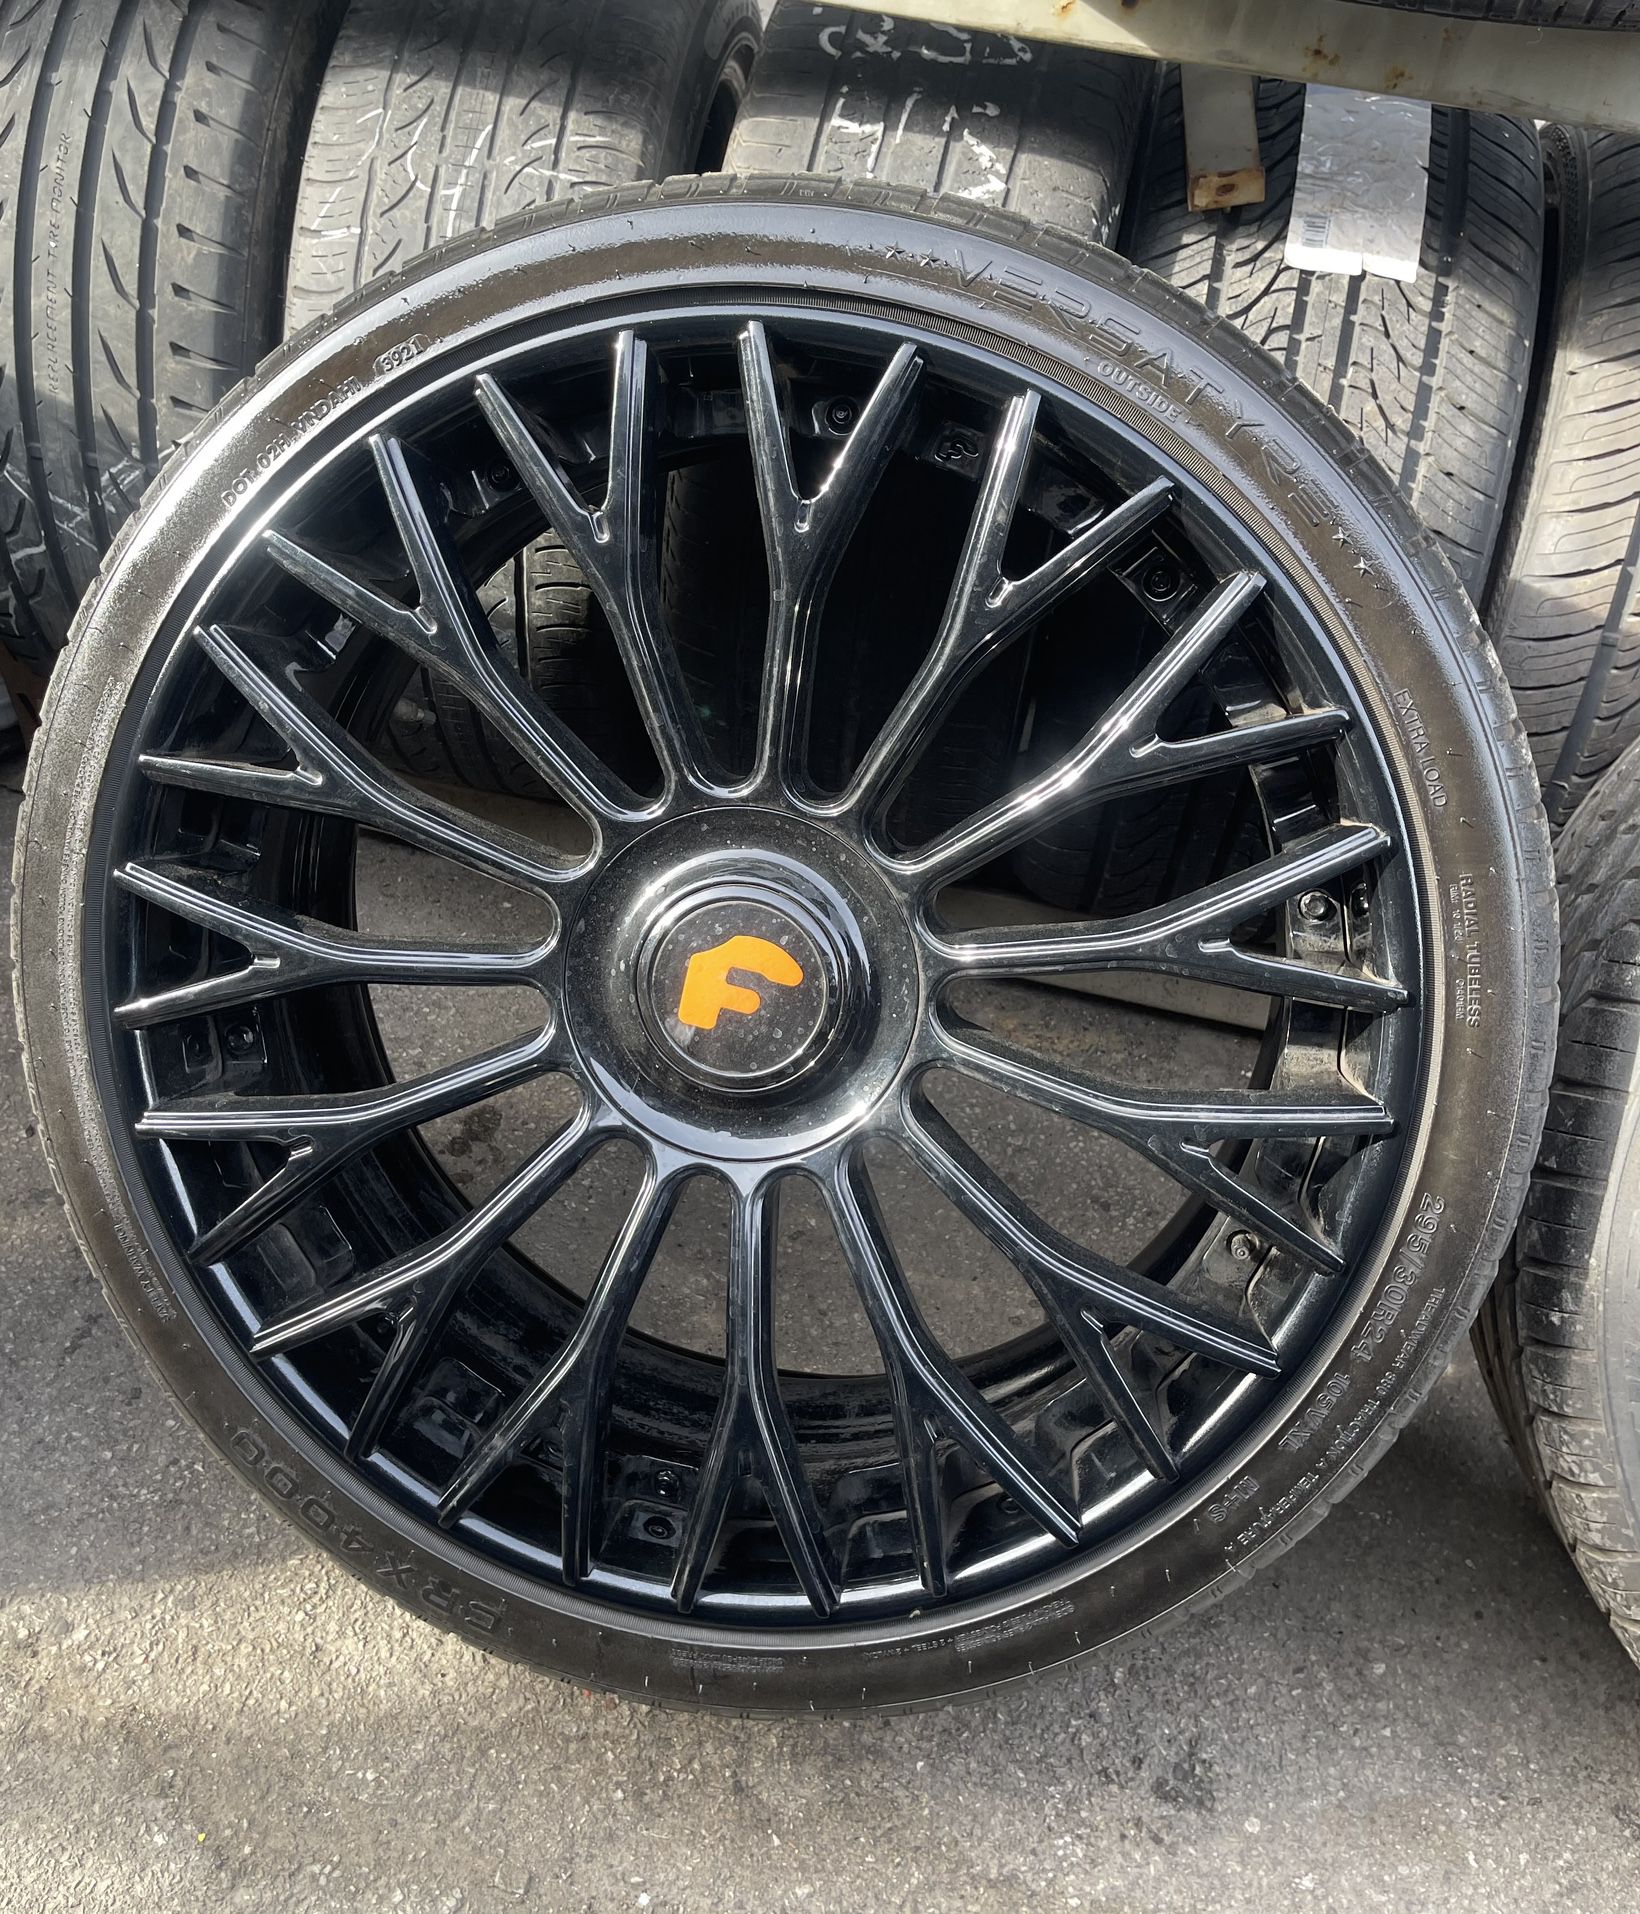 24” Forgiato Wheels Rims Tires 5X127 Jeep Set Durango 